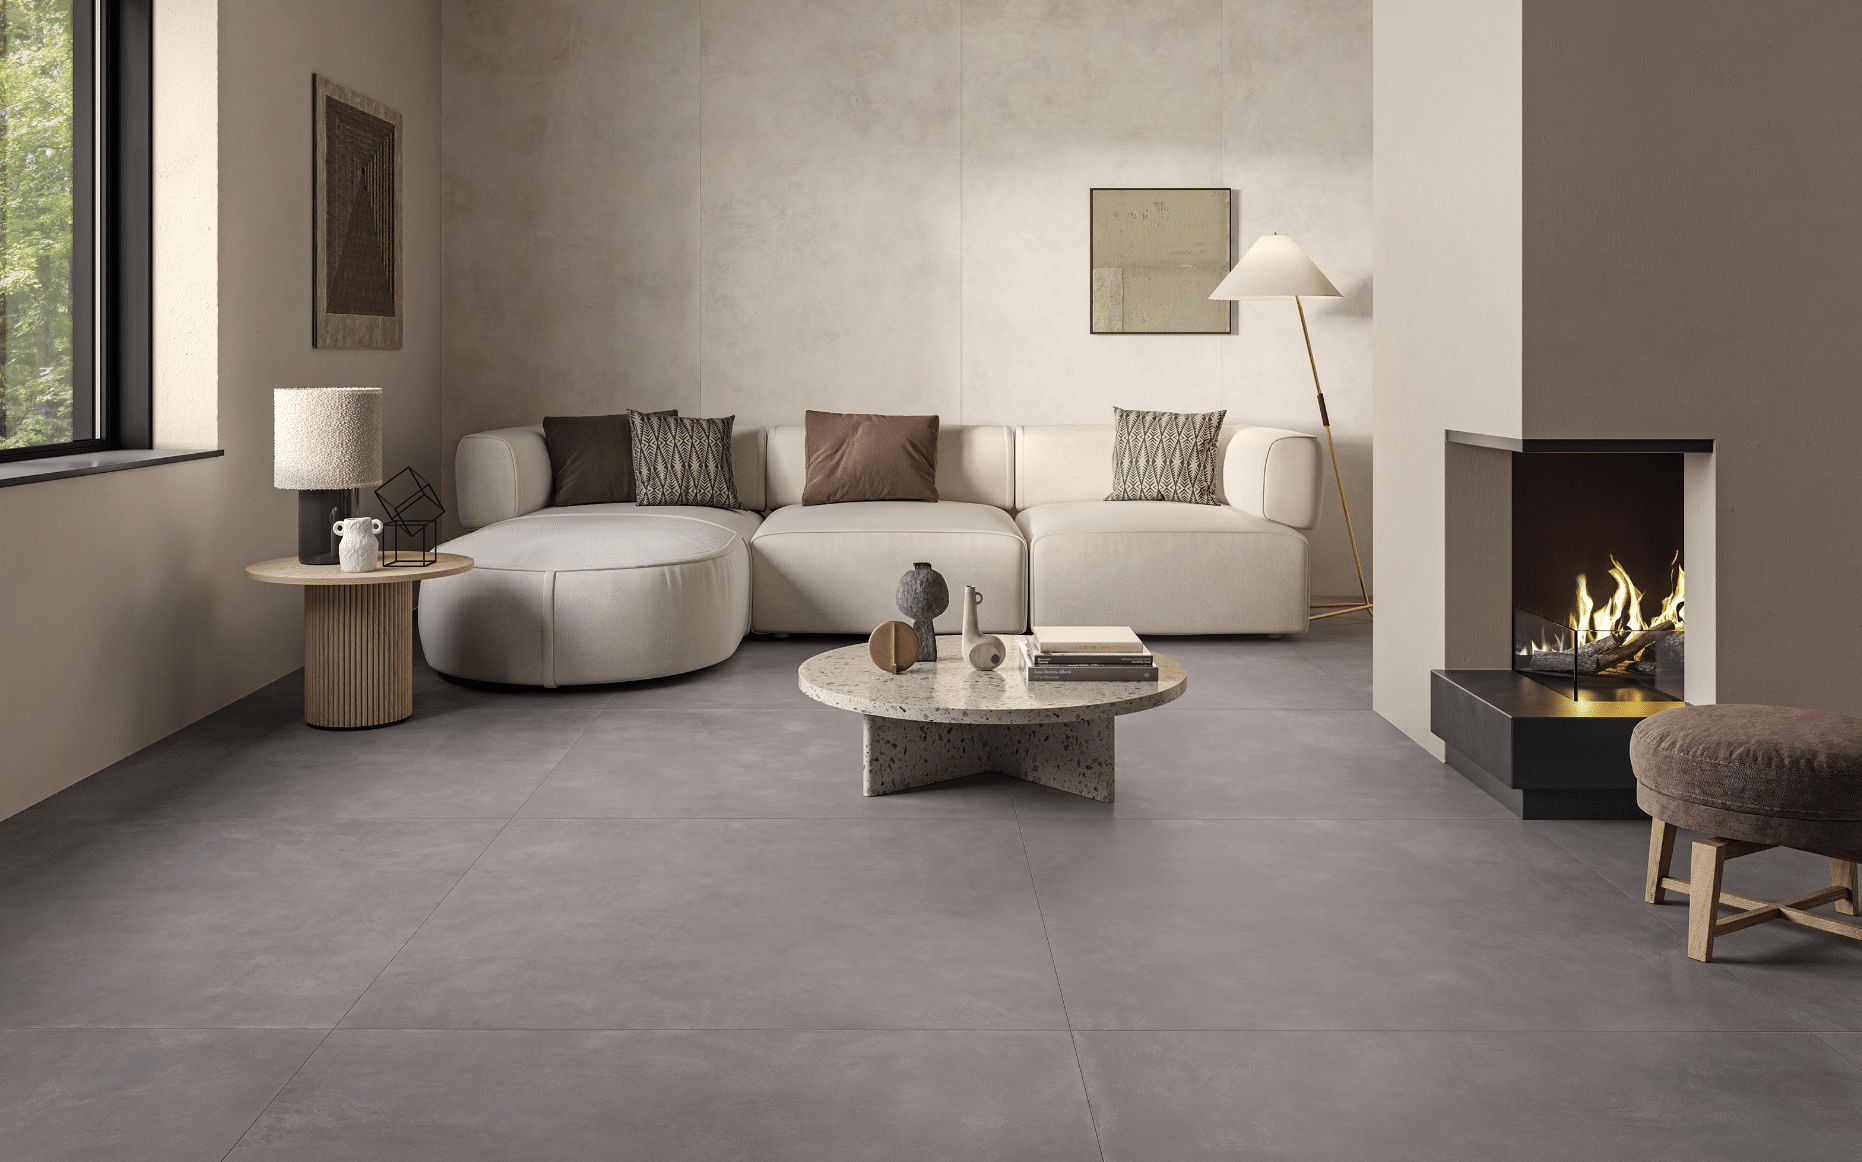 Fliesendorf zeigt ein Wohnzimmer in Naturtönen mit grauem Fliesenboden und heller Couchlandschaft mit einem schwarzen Kamin und rundem Beistelltisch aus Marmor.